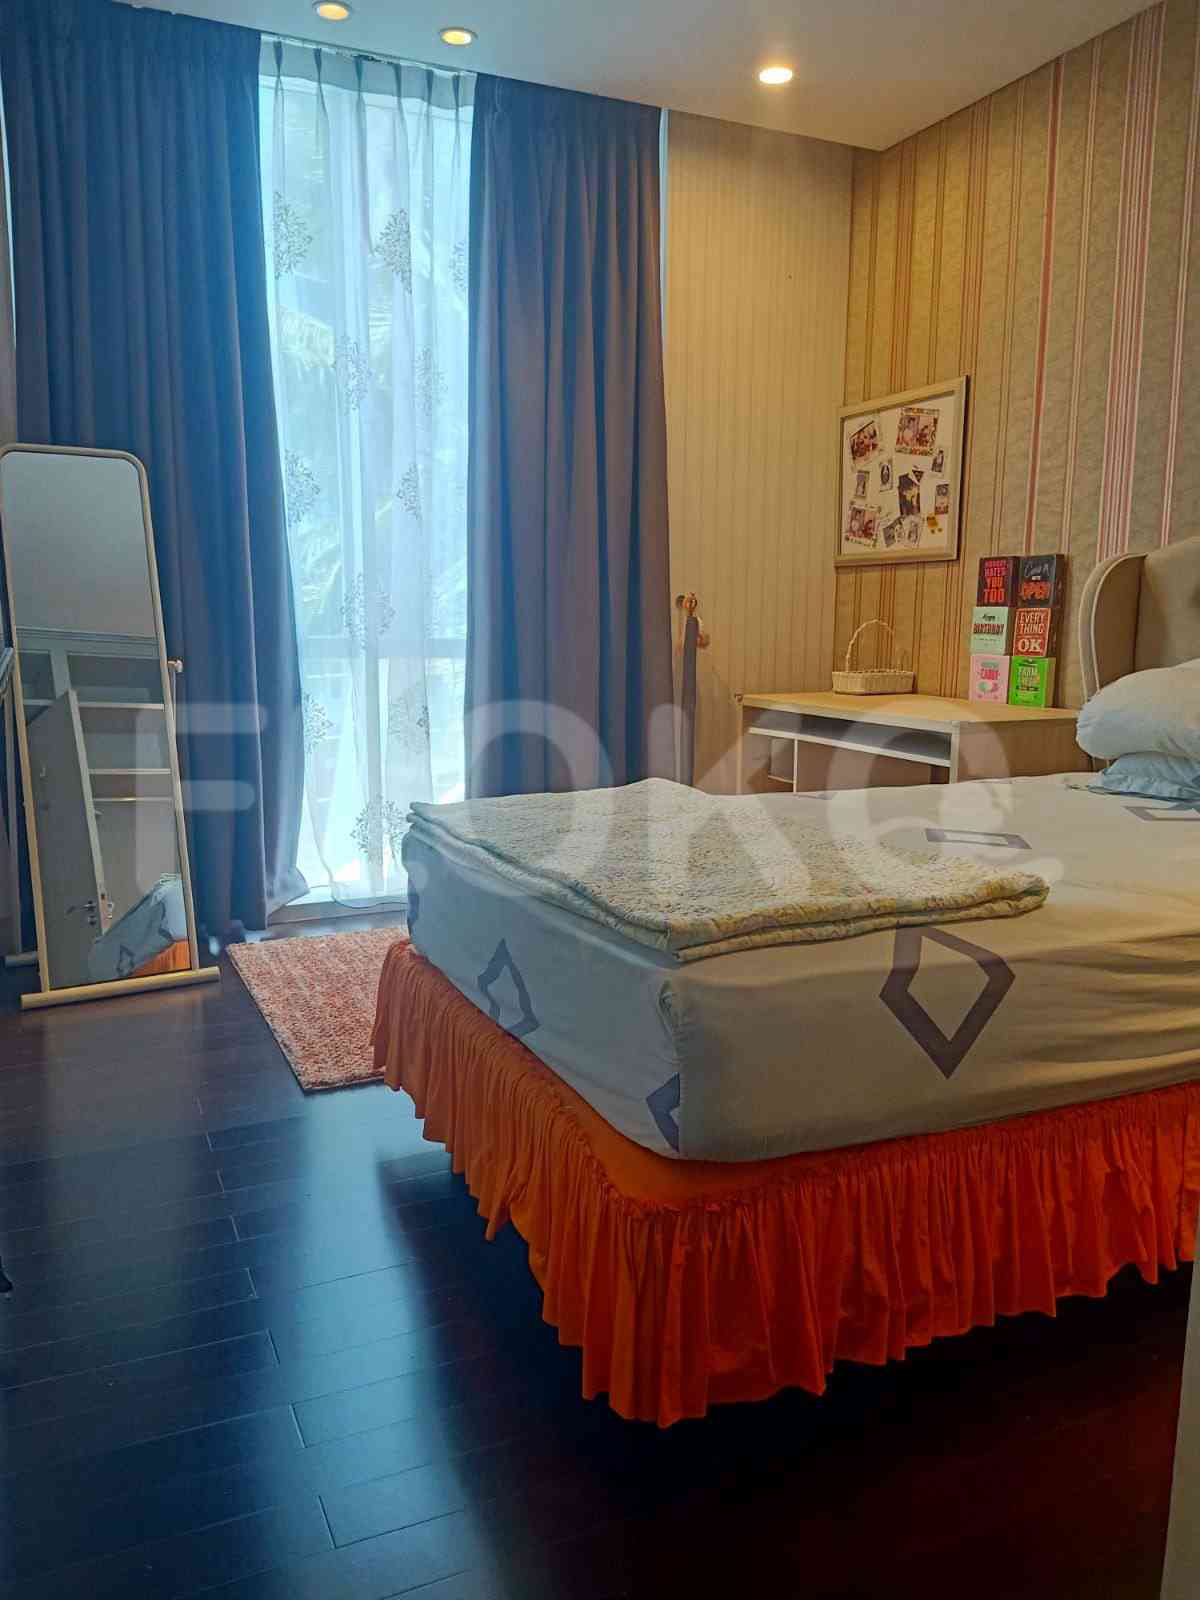 3 Bedroom on 16th Floor for Rent in Regatta - fpl795 10